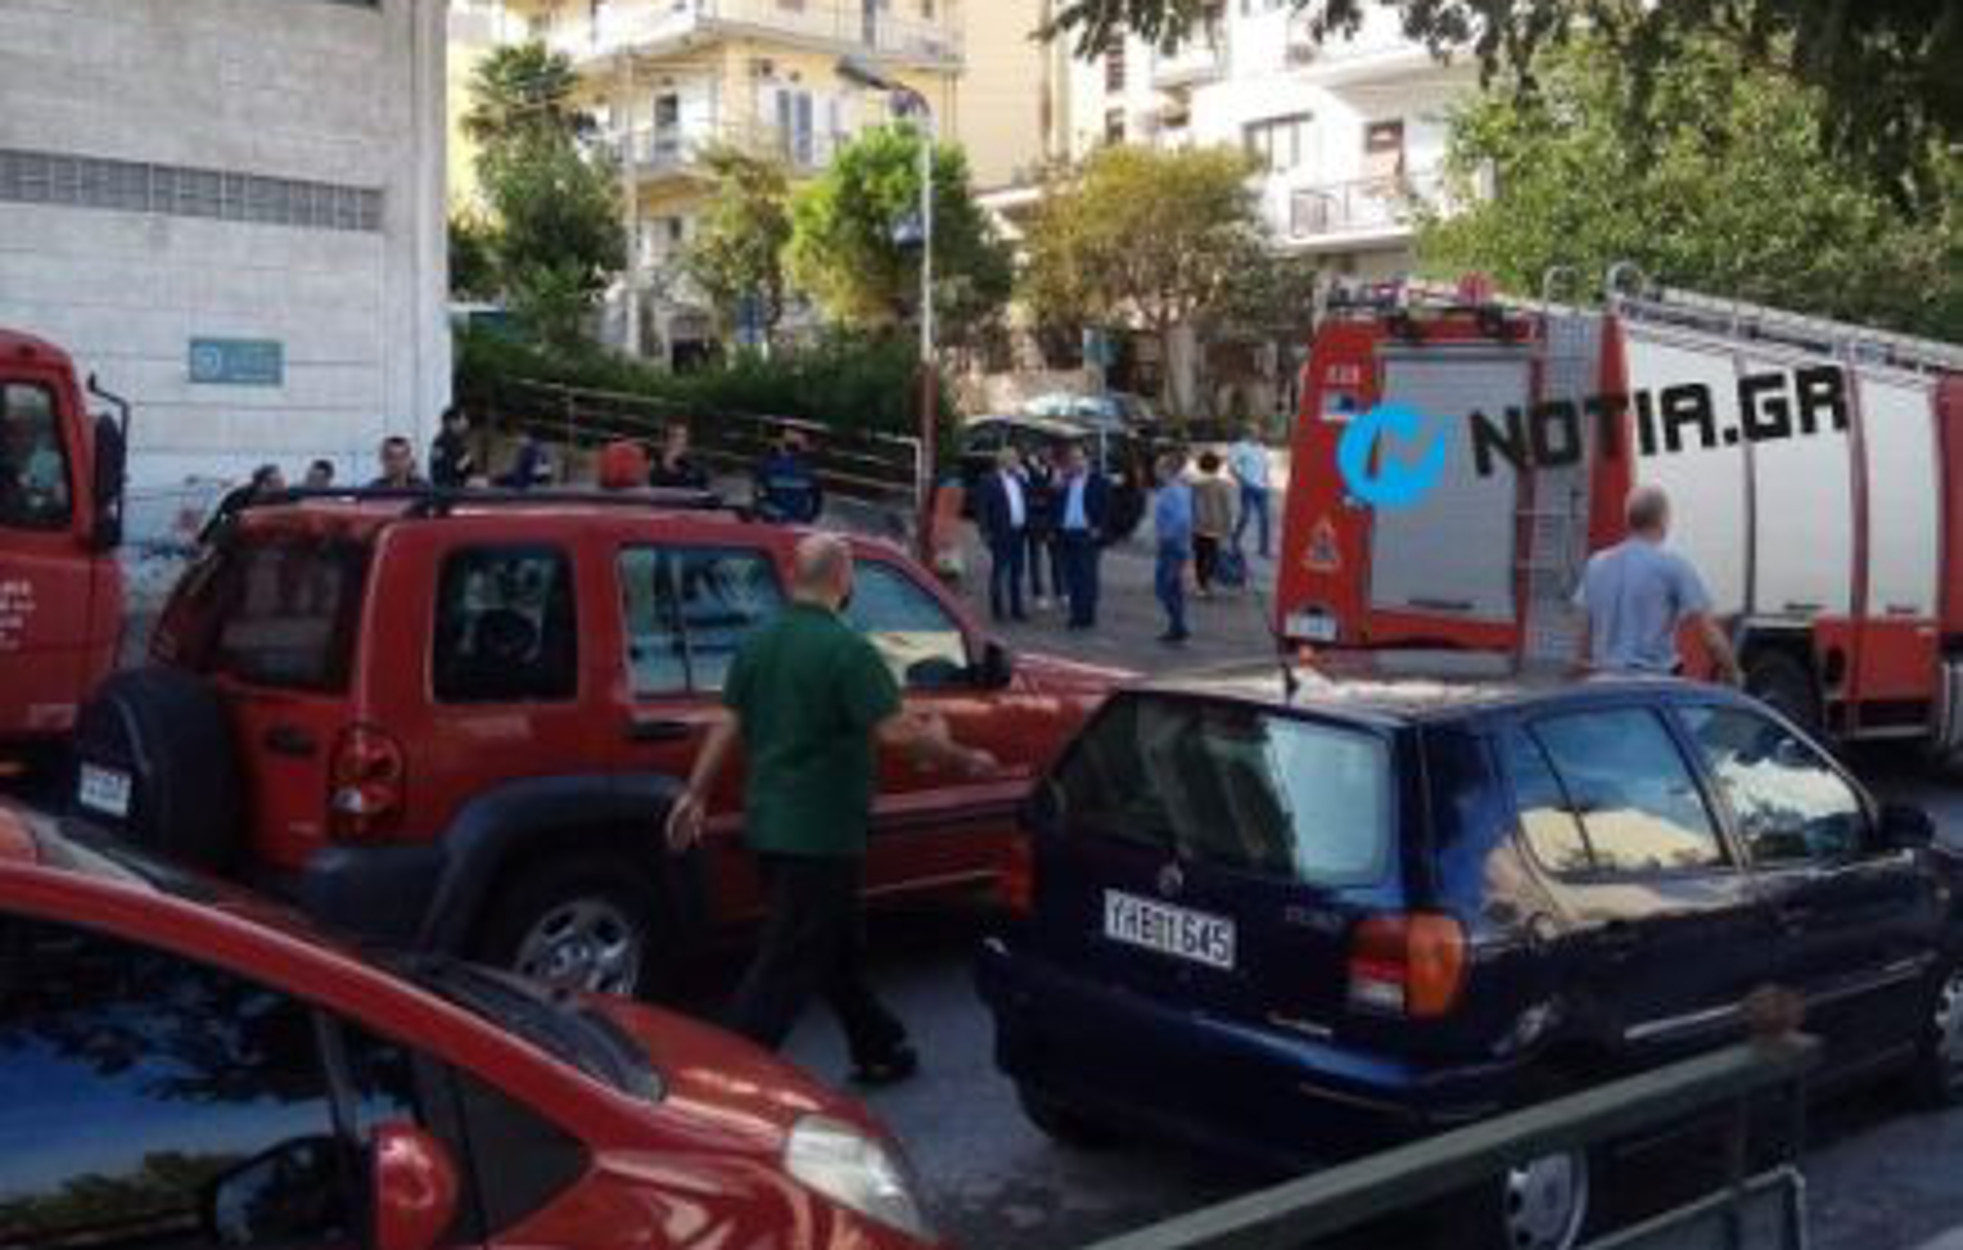 Ηλιούπολη: Οδηγός καταπλακώθηκε από το φορτηγό του σε πασίγνωστο σουπερμάρκετ [pics]